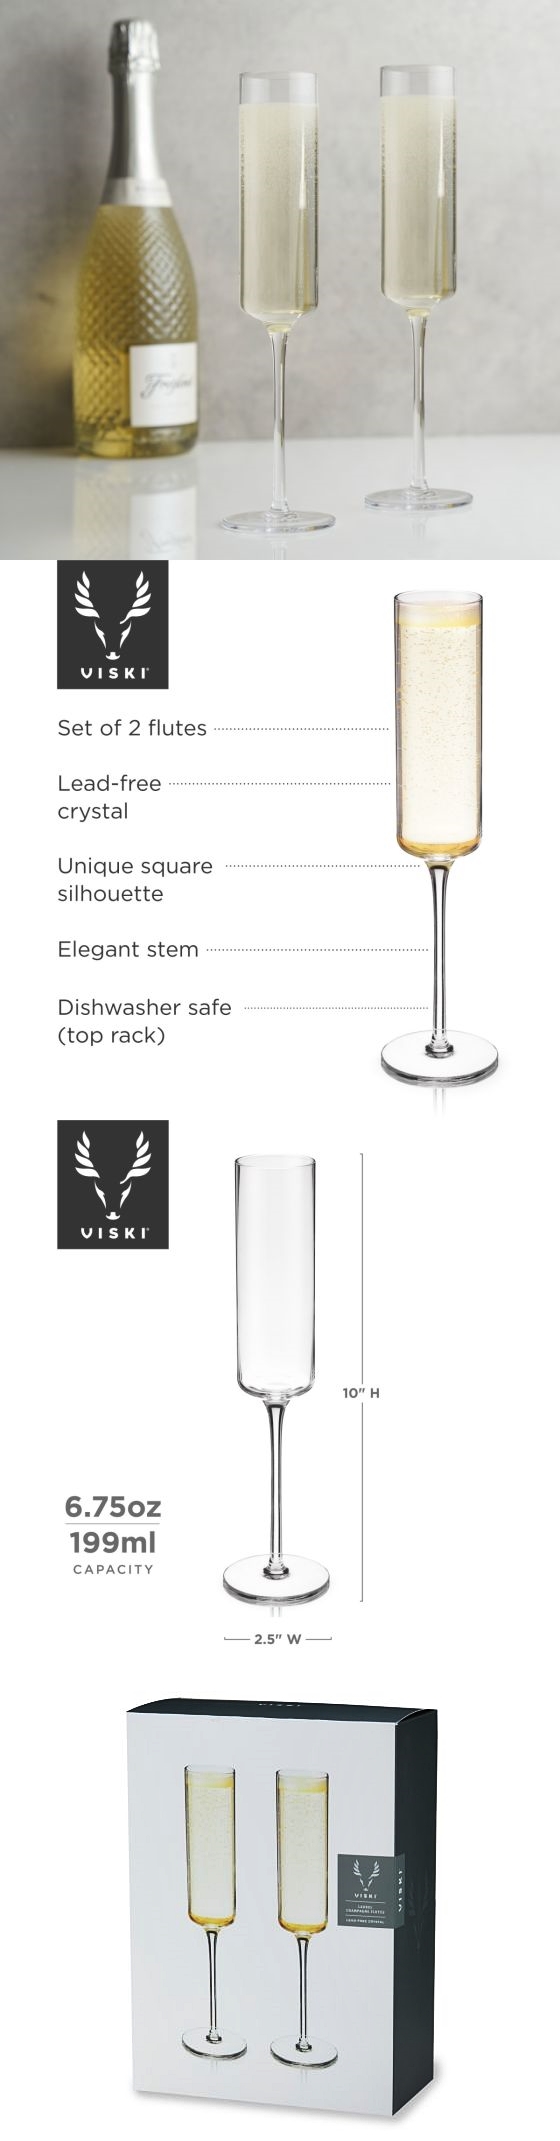 Laurel 6.75oz Champagne Flutes with Unique Square Silhouette by VISKI